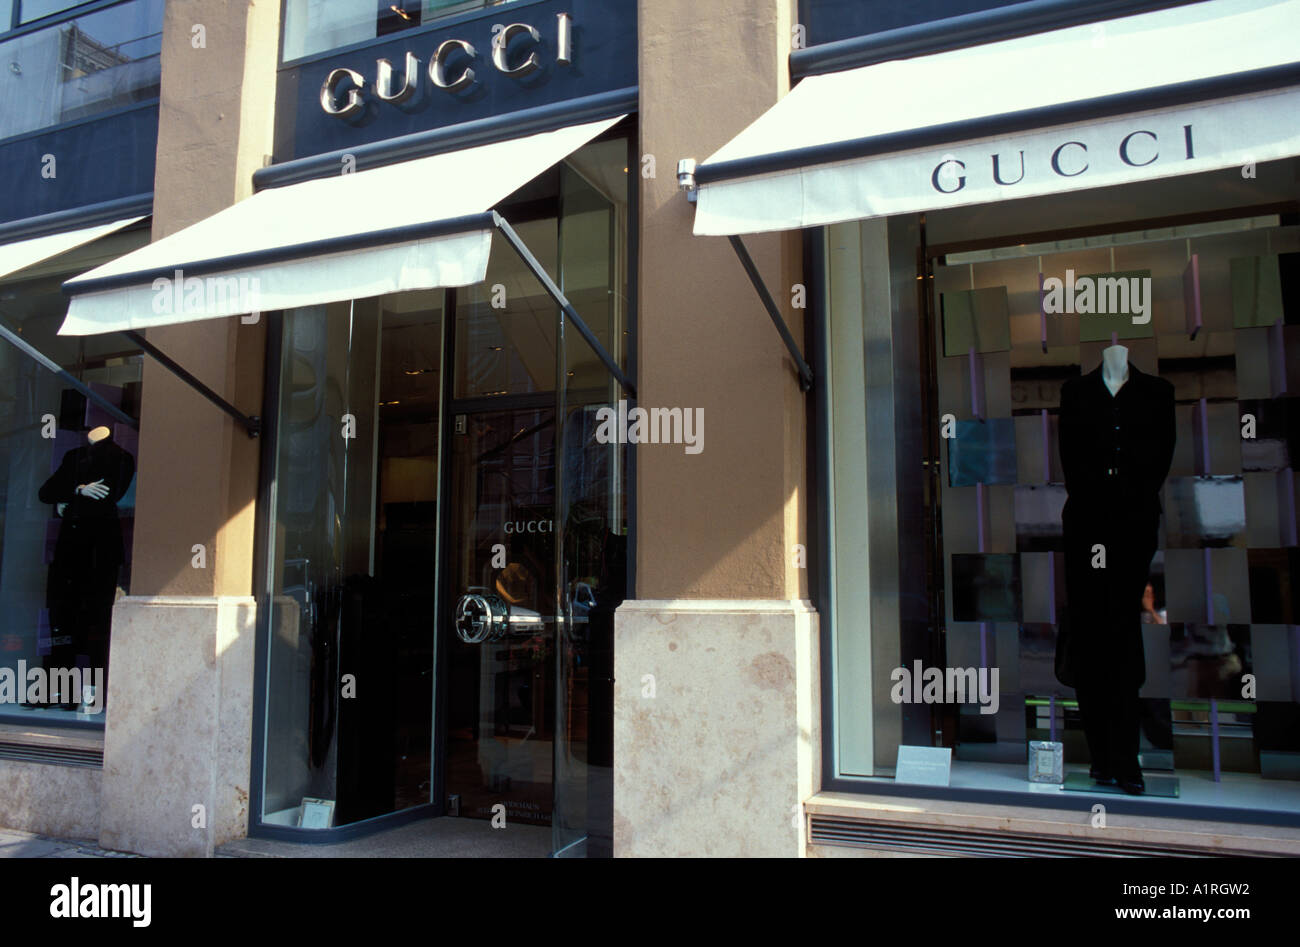 Gucci-Shop auf der Straße Maximilianstraße München Bayern Deutschland  Stockfotografie - Alamy